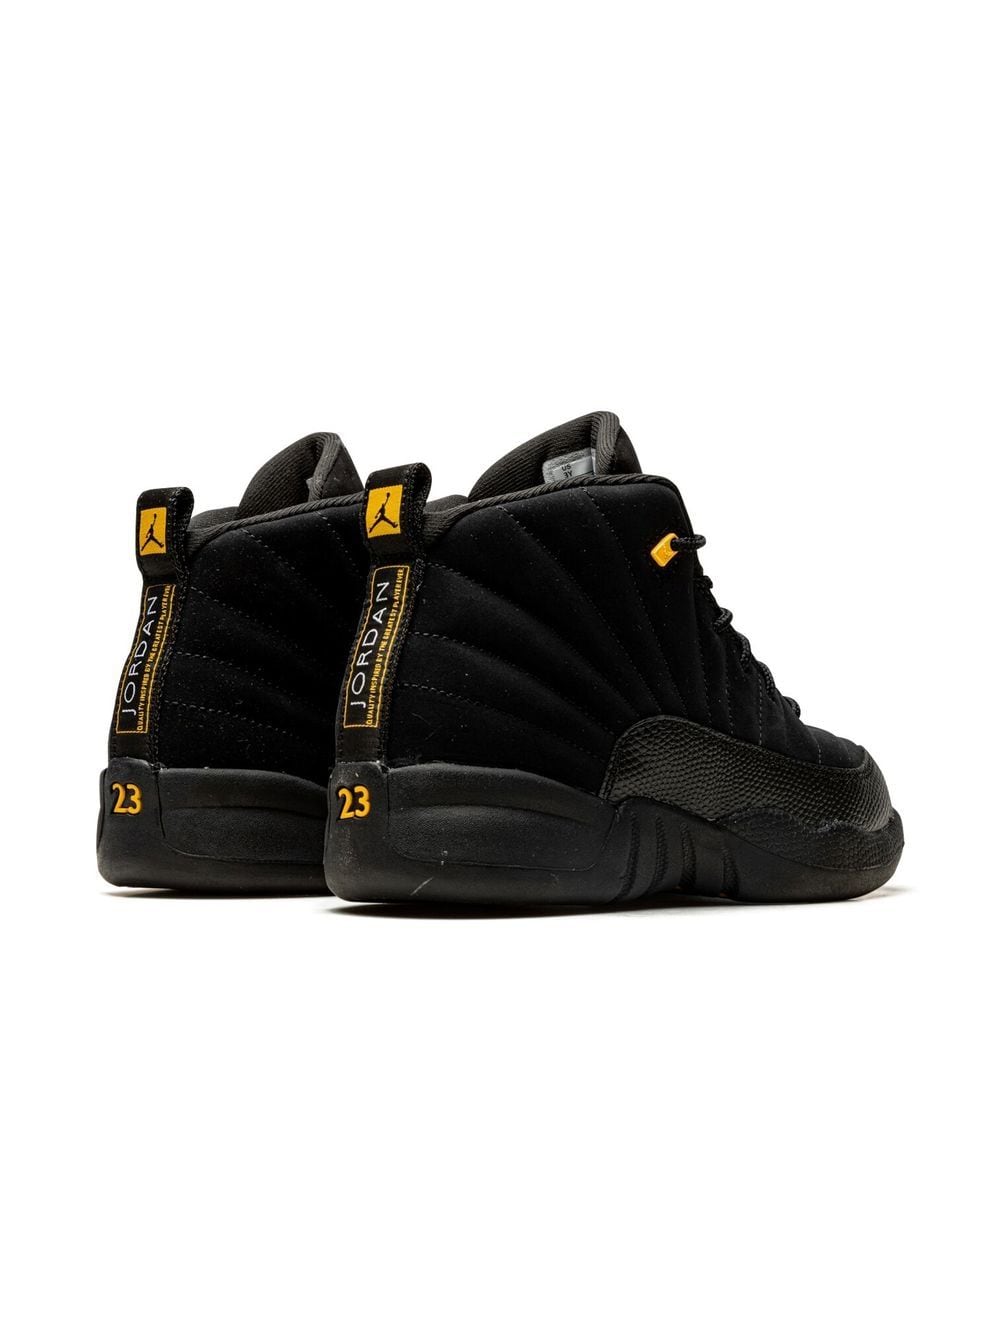 Shop Jordan Air  12 "black Taxi" Sneakers